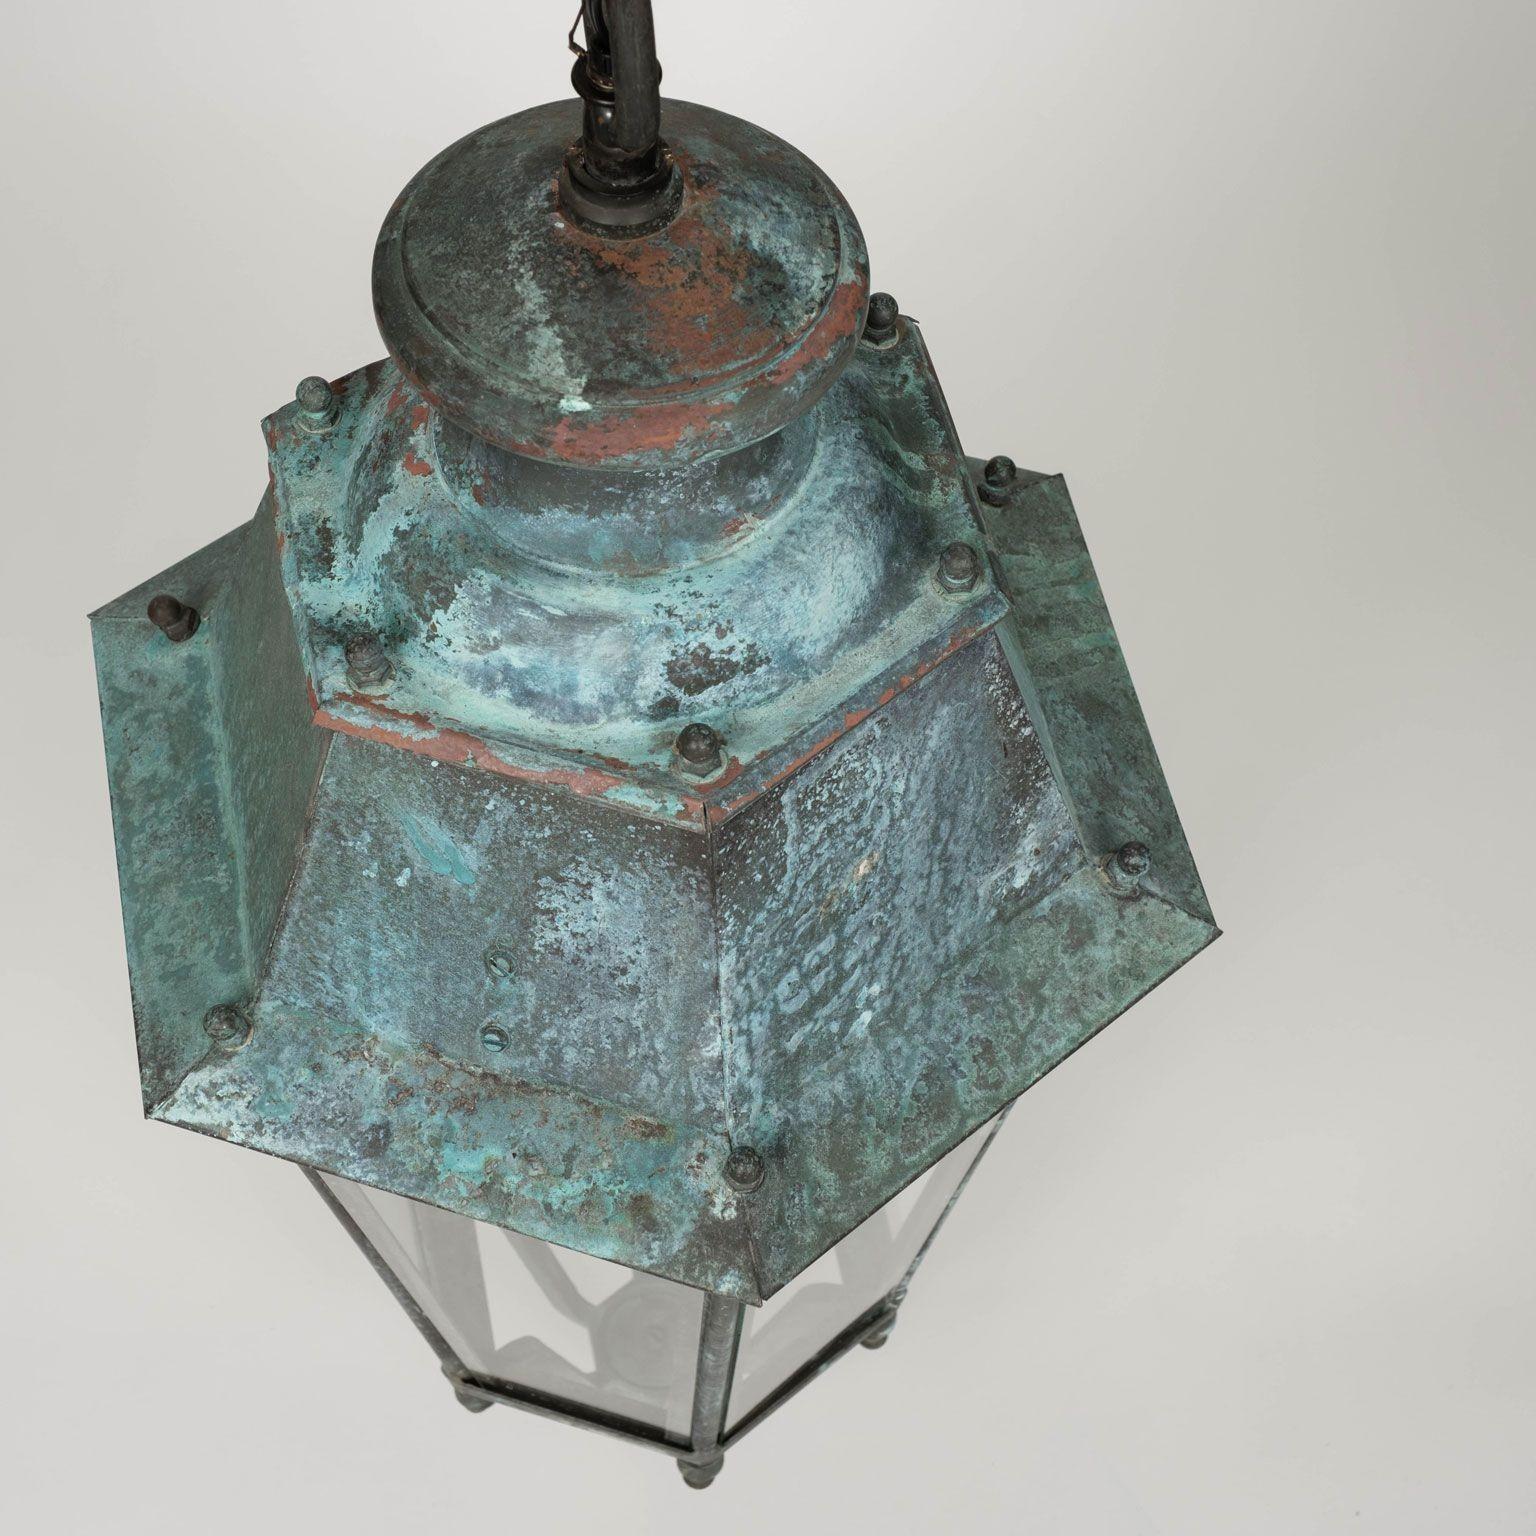 Paar französische Kupfer- und Glaslaternen aus dem 19. Jahrhundert, ca. 1865-1884. Blaugrüne Grünspan-Patina. Ursprünglich dienten sie als gasbeleuchtete Straßenlaternen - jetzt sind sie neu verkabelt und mit je drei Kandelaberlampen bestückt.